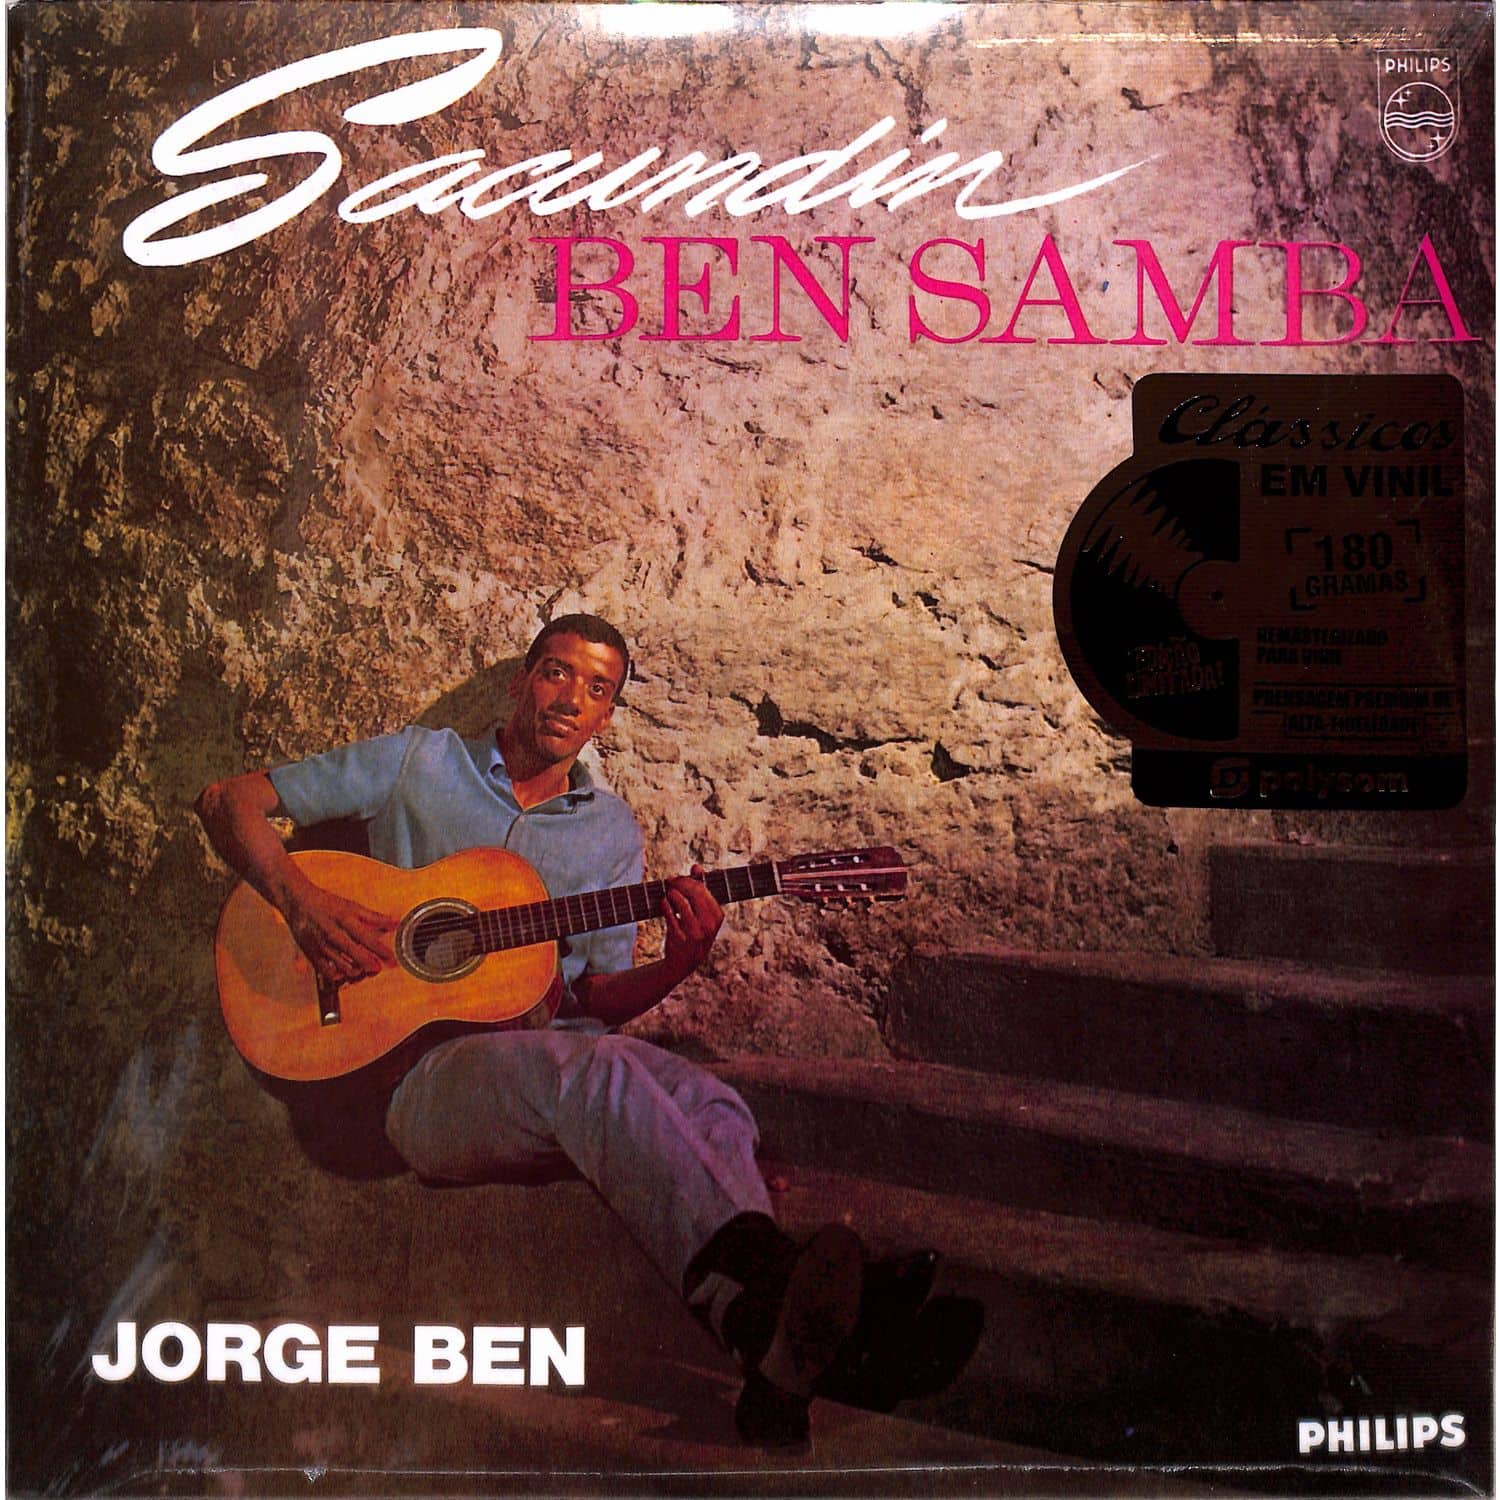 Jorge Ben - SACUNDIN BENSAMBA 